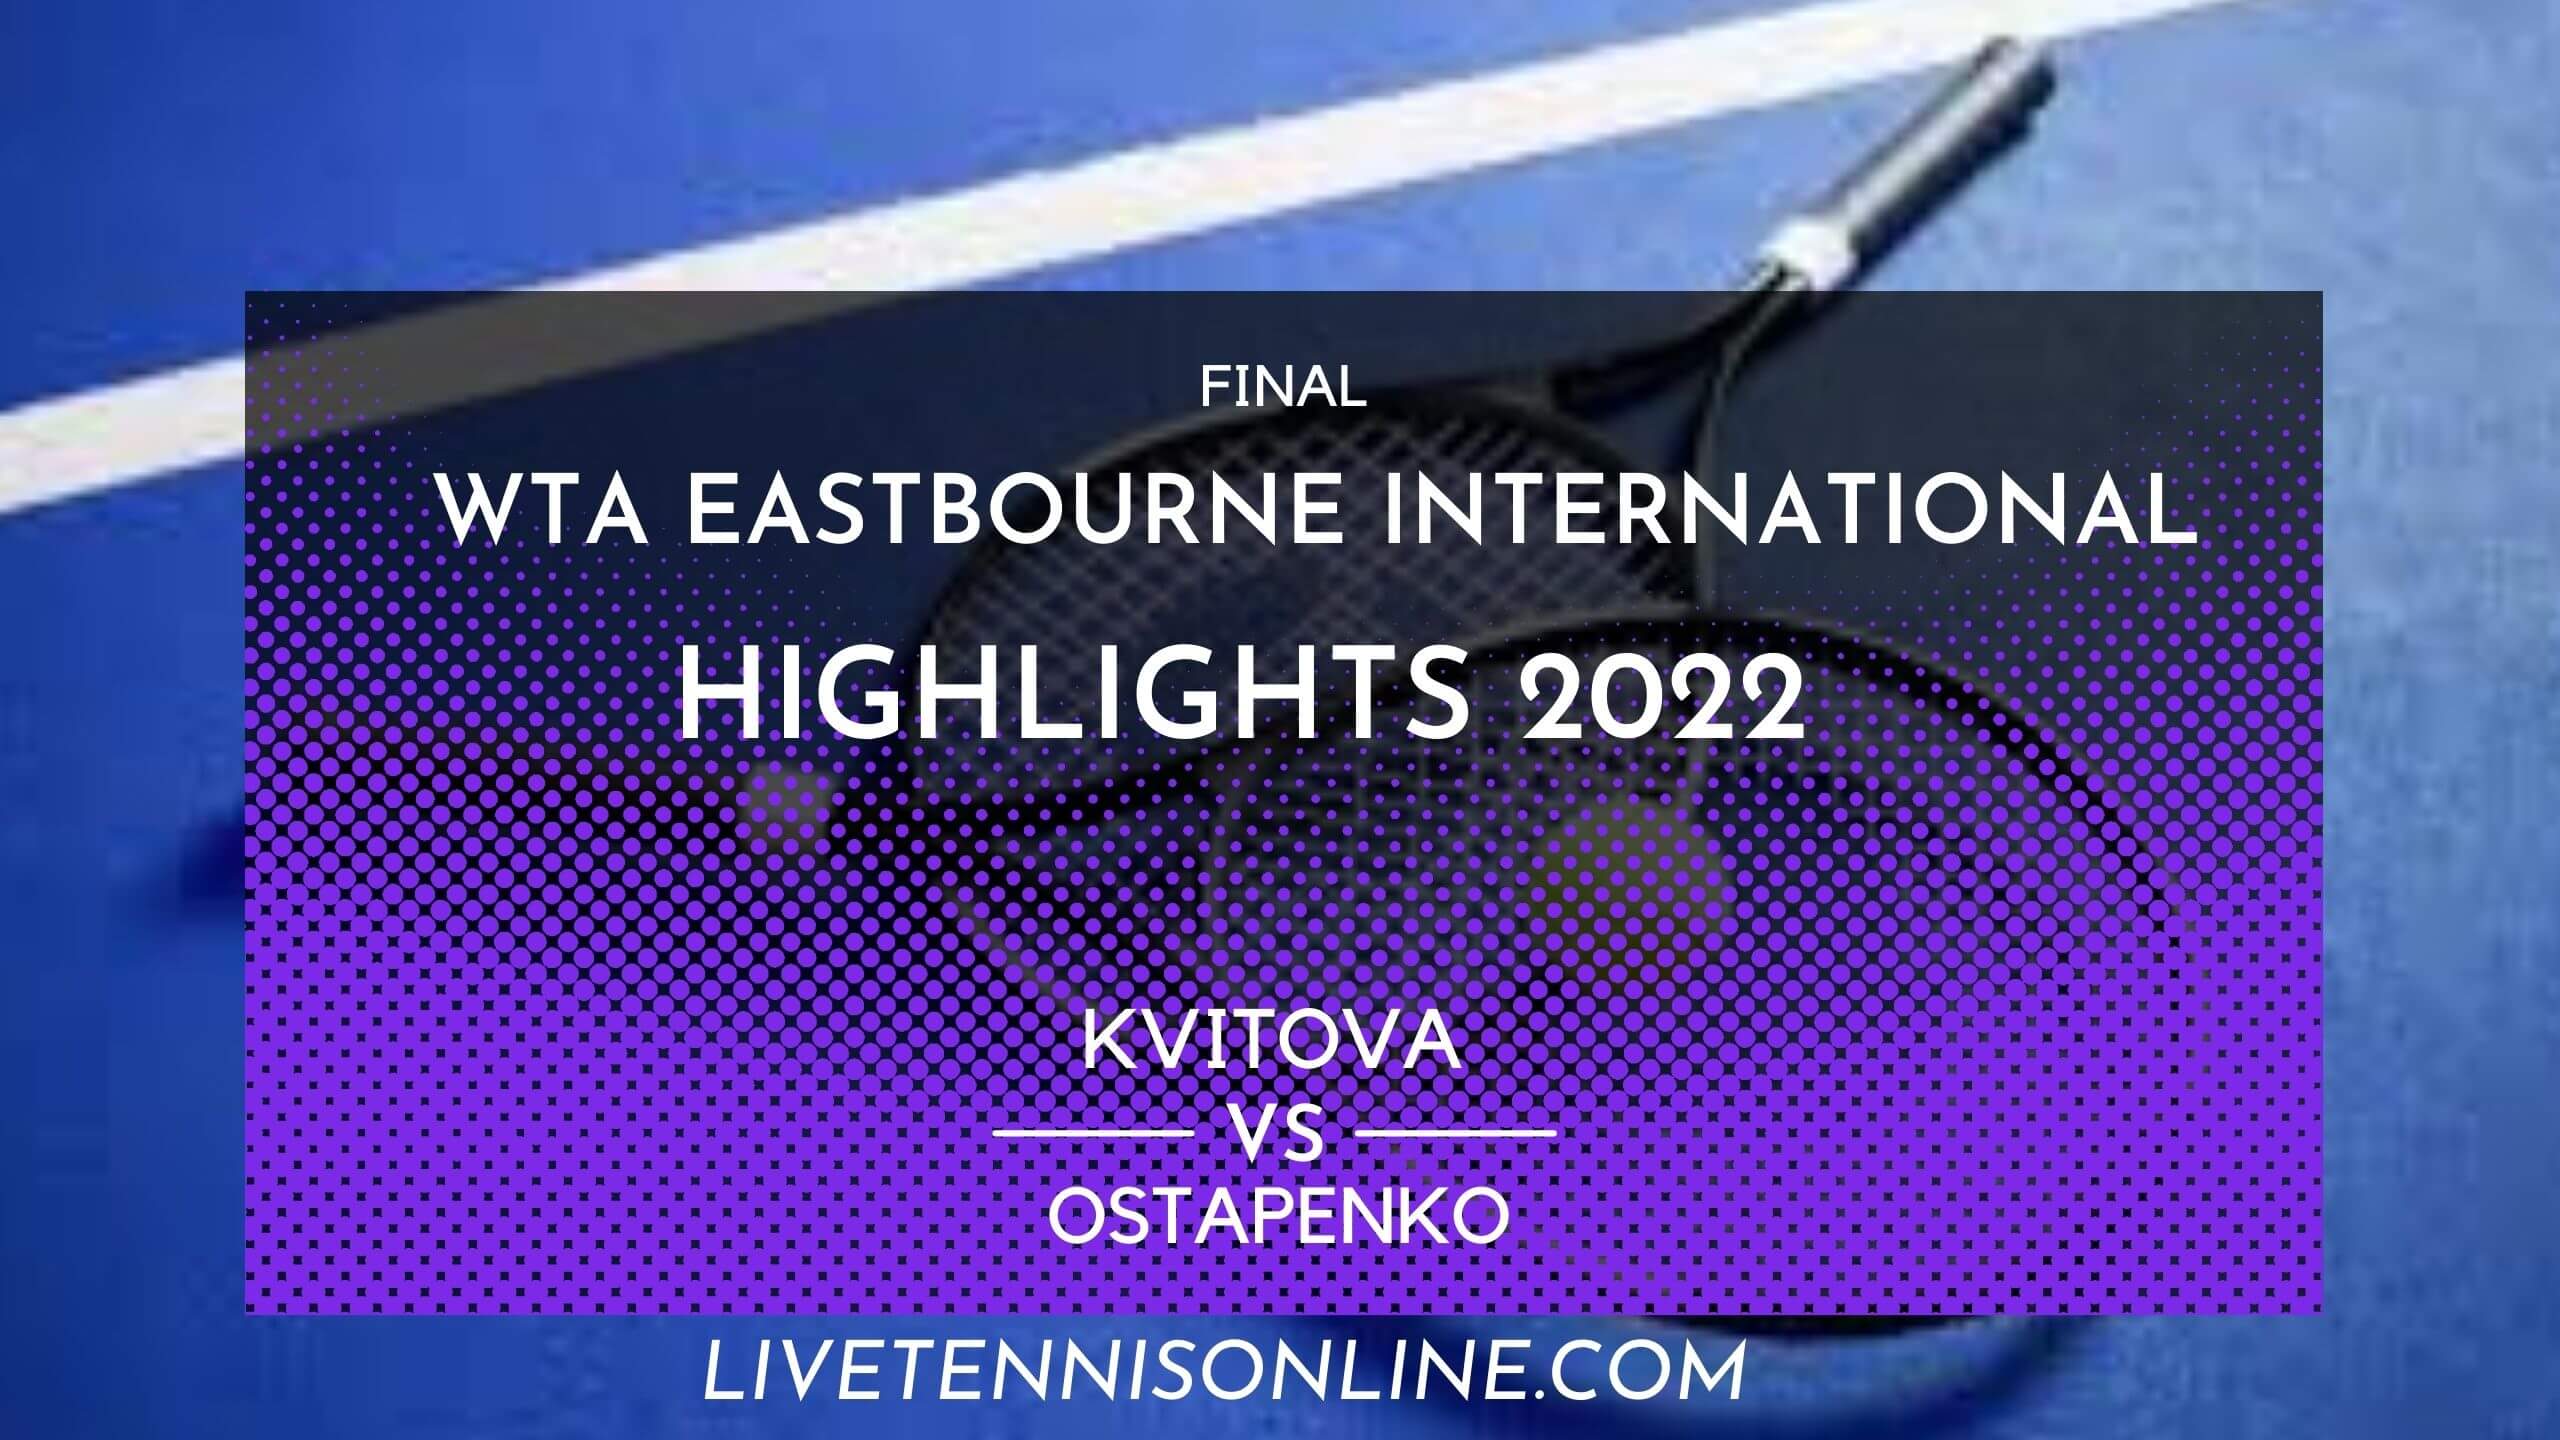 Kvitova Vs Ostapenko Final Highlights 2022 Eastbourne